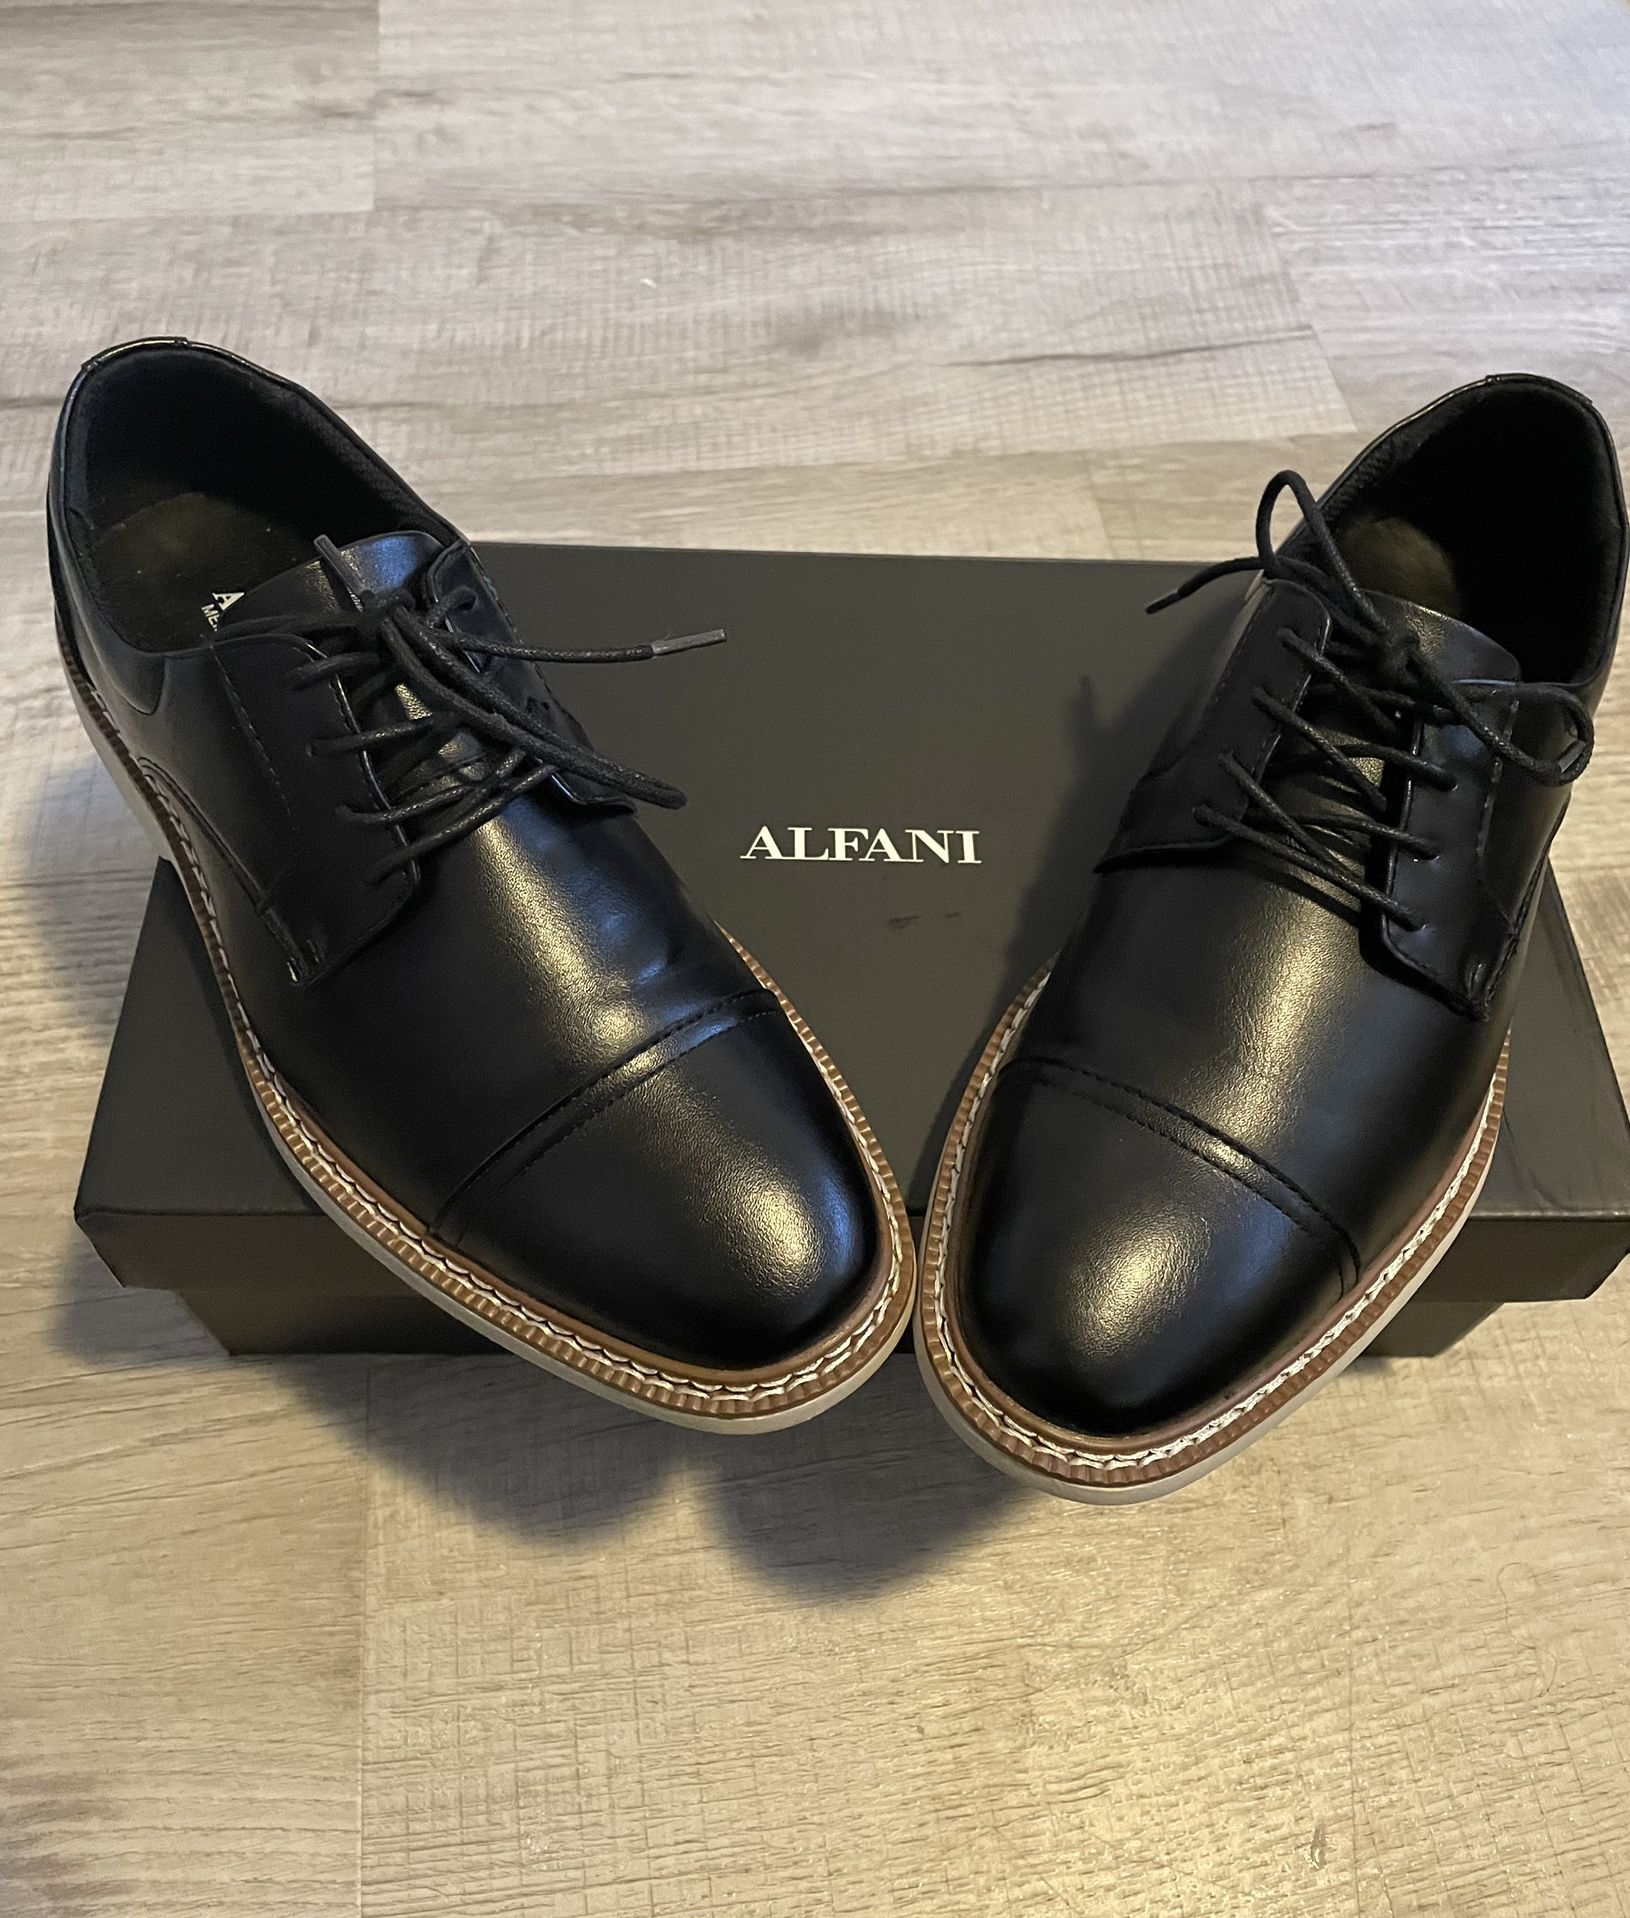 Alfani Men’s 8.5 $60